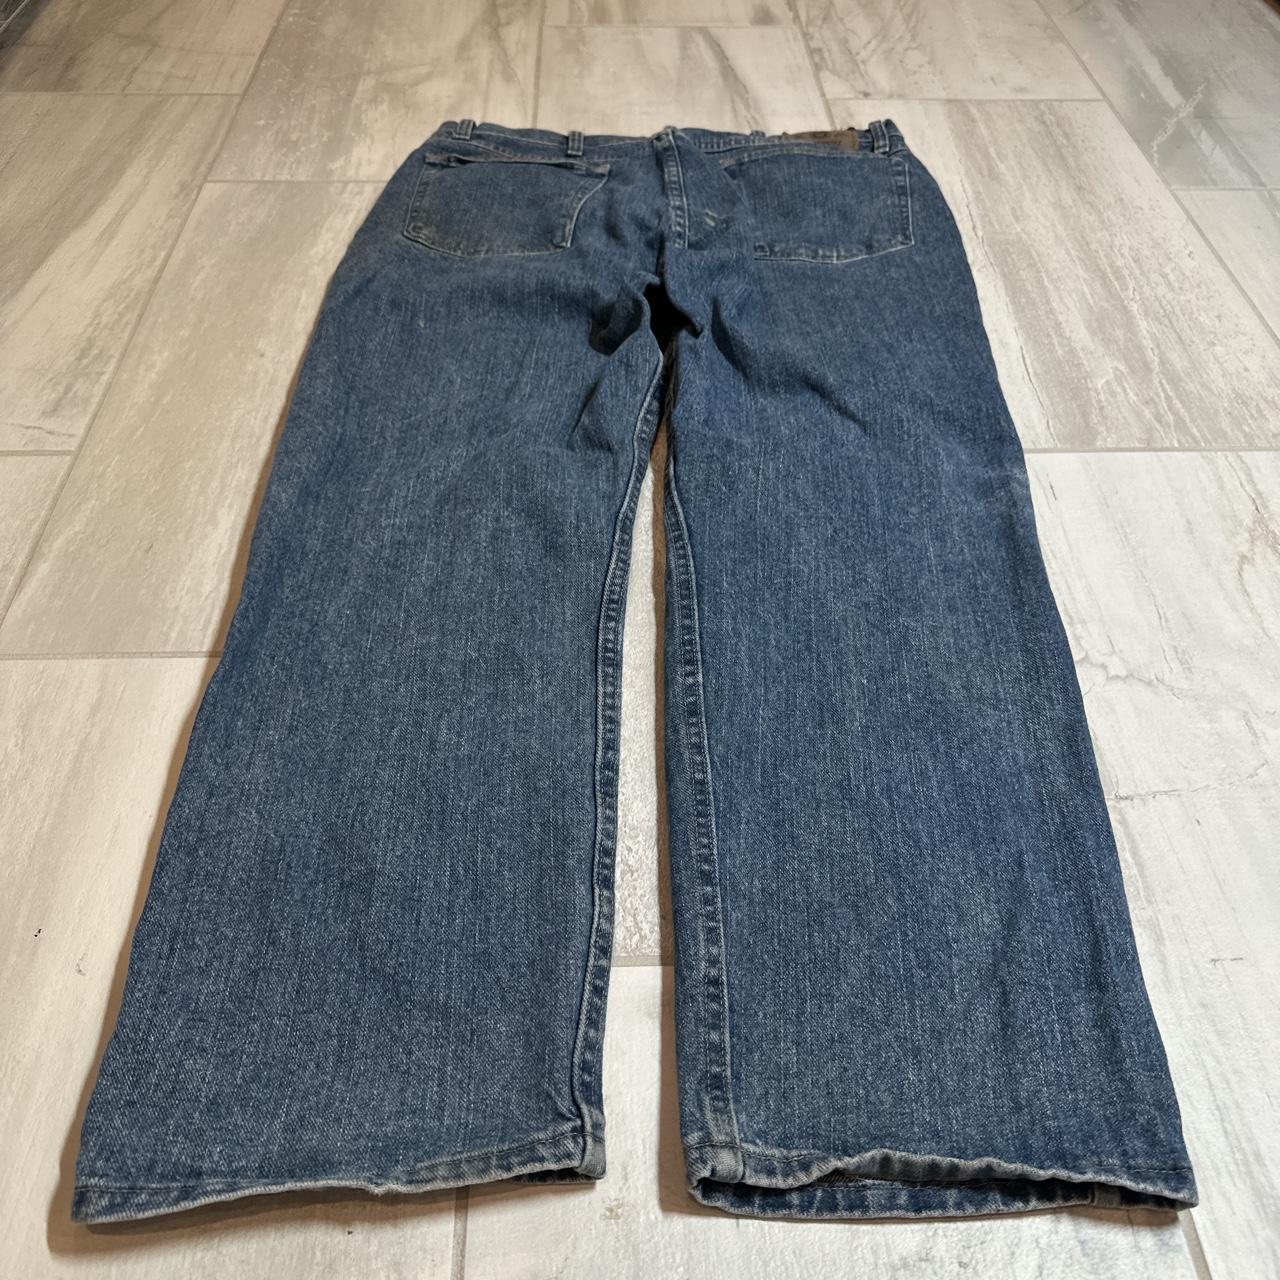 Vintage baggy skater jeans Size 36/30 #jeans... - Depop